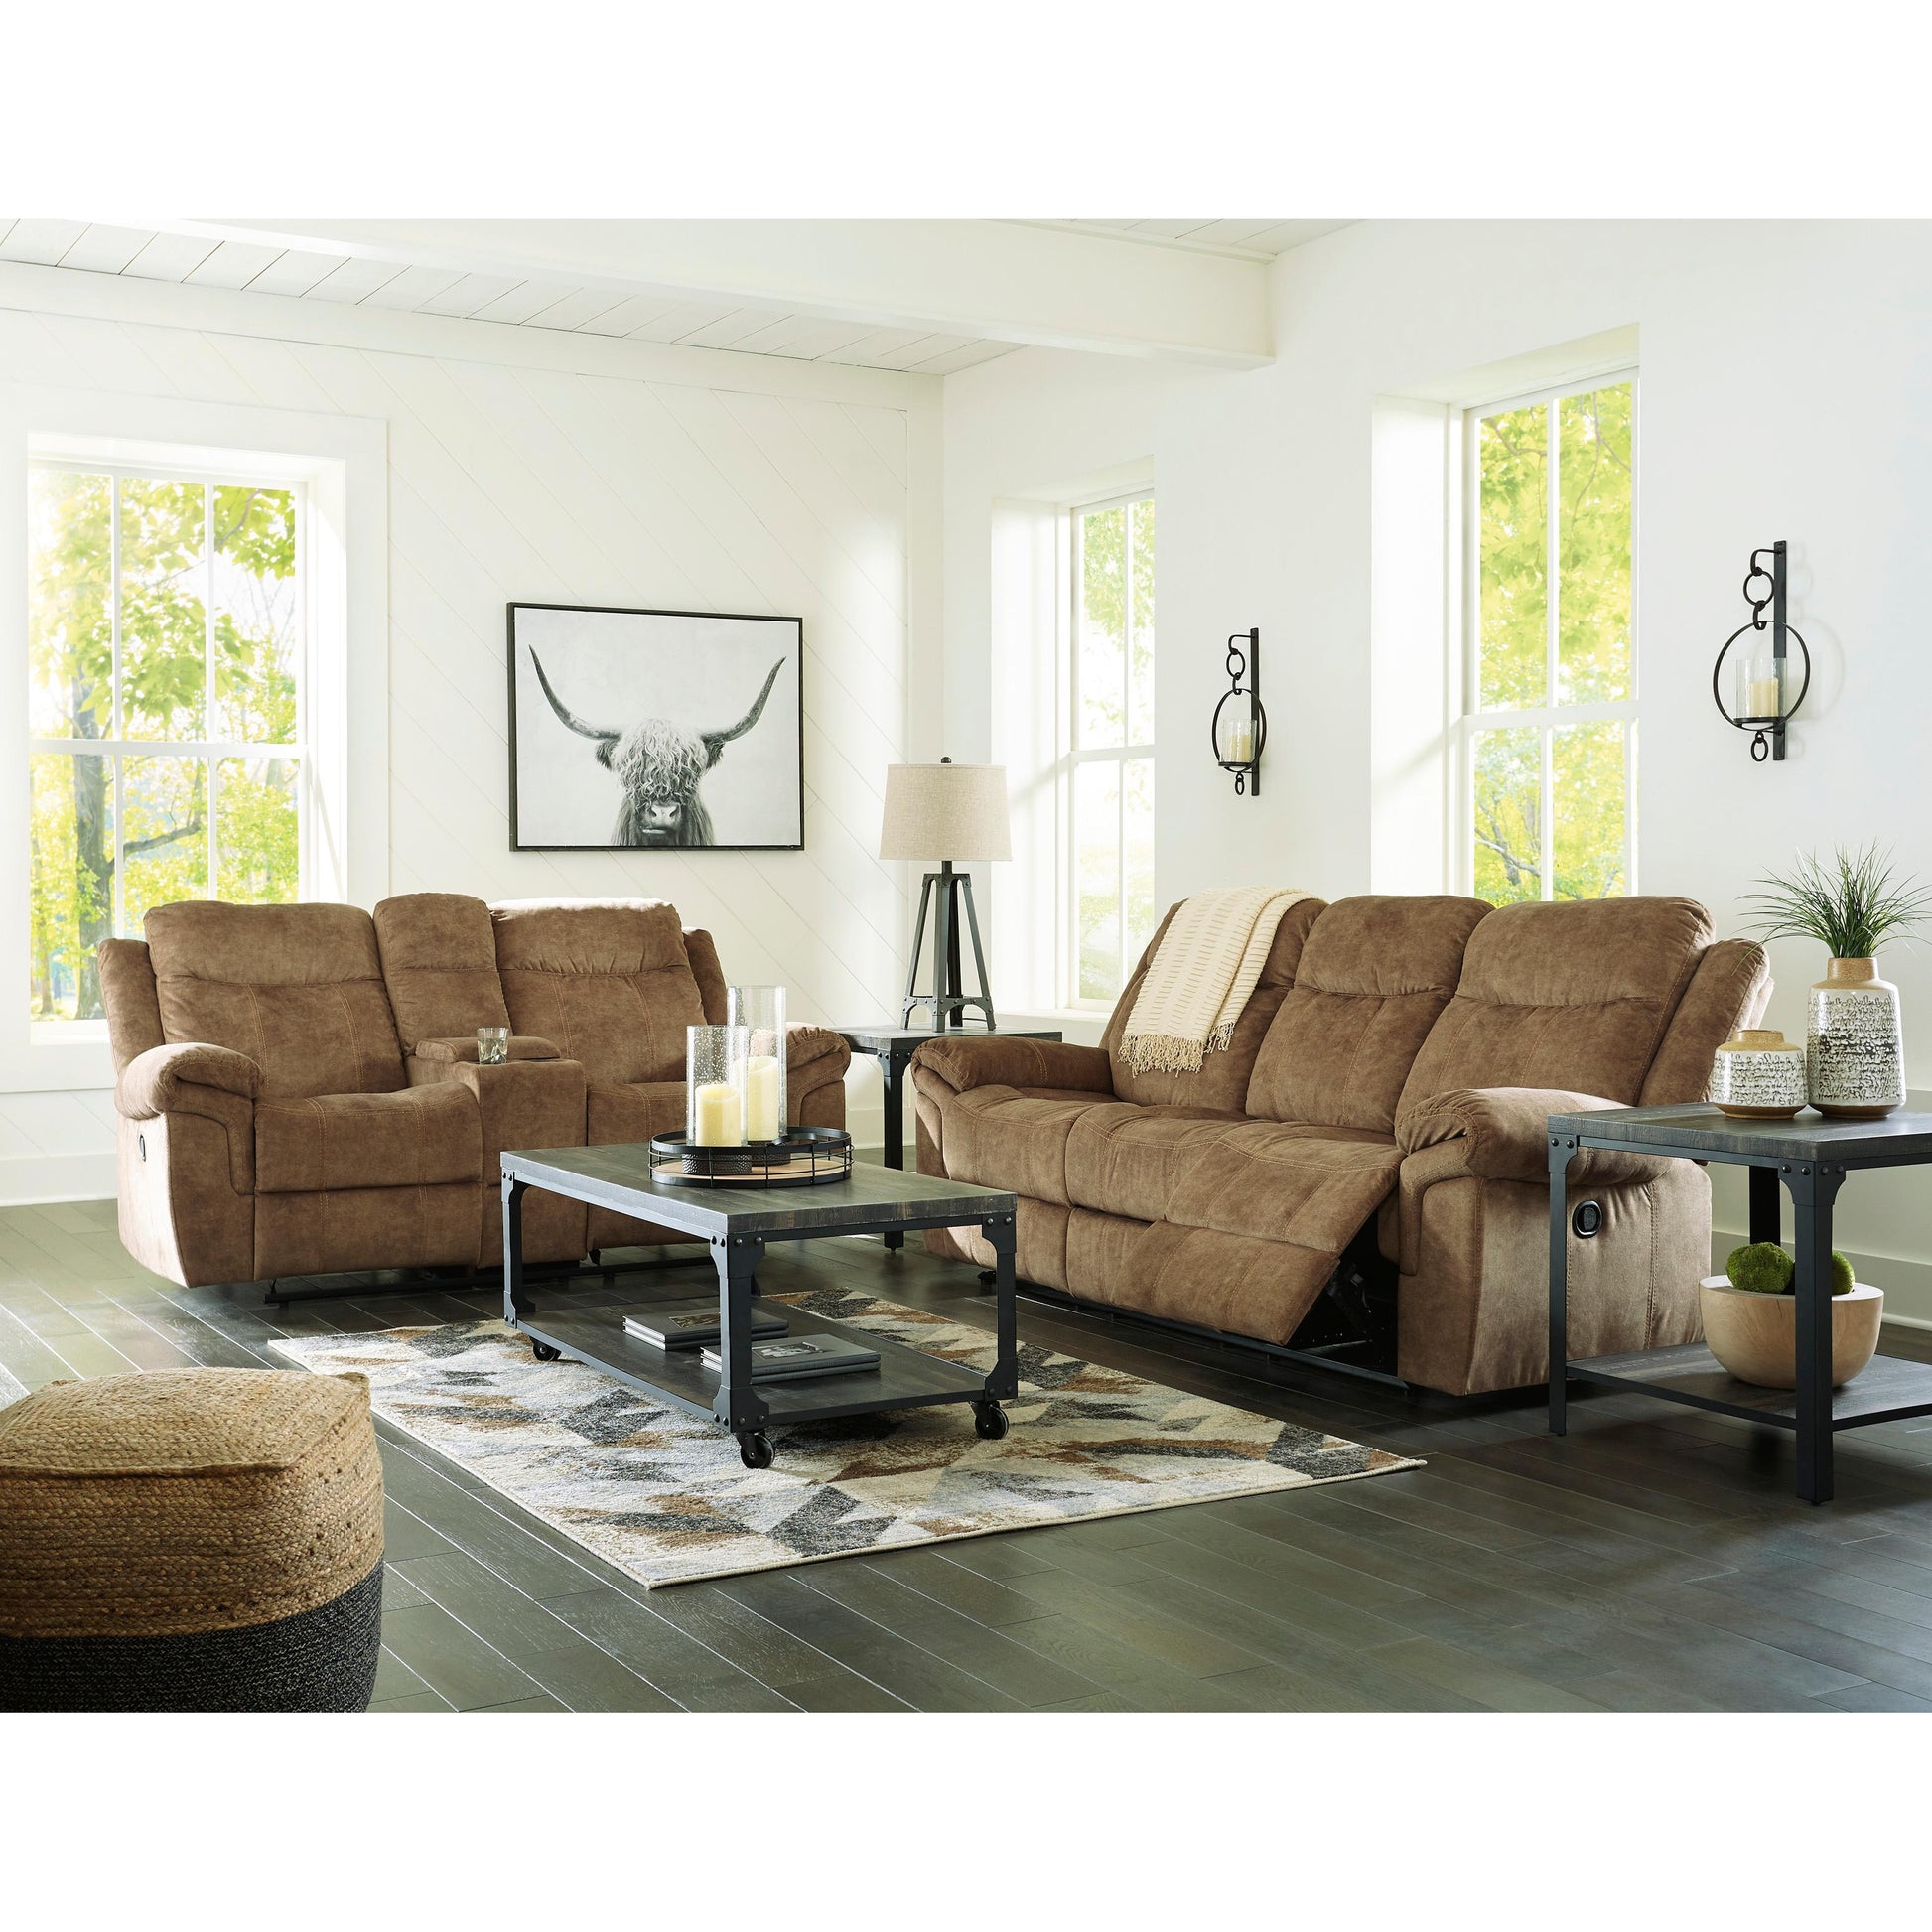 Signature Design by Ashley Huddle-Up 82304U1 2 pc Reclining Living Room Set IMAGE 1